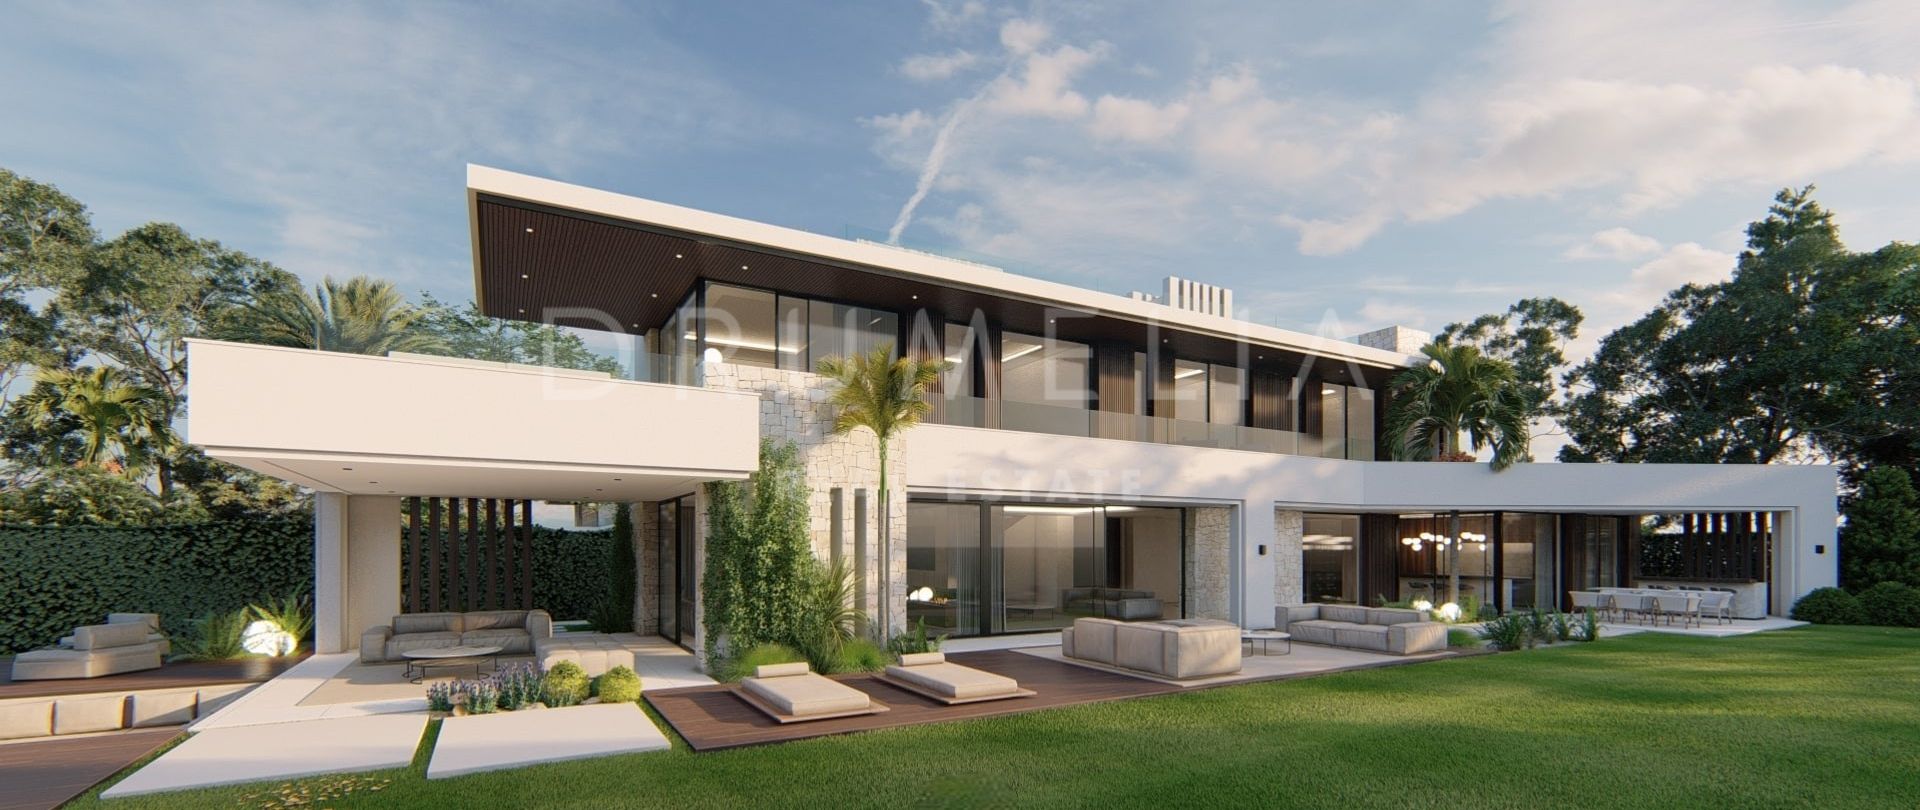 Gloednieuwe uitstekende luxe villa in hedendaagse stijl in Villacana, Estepona